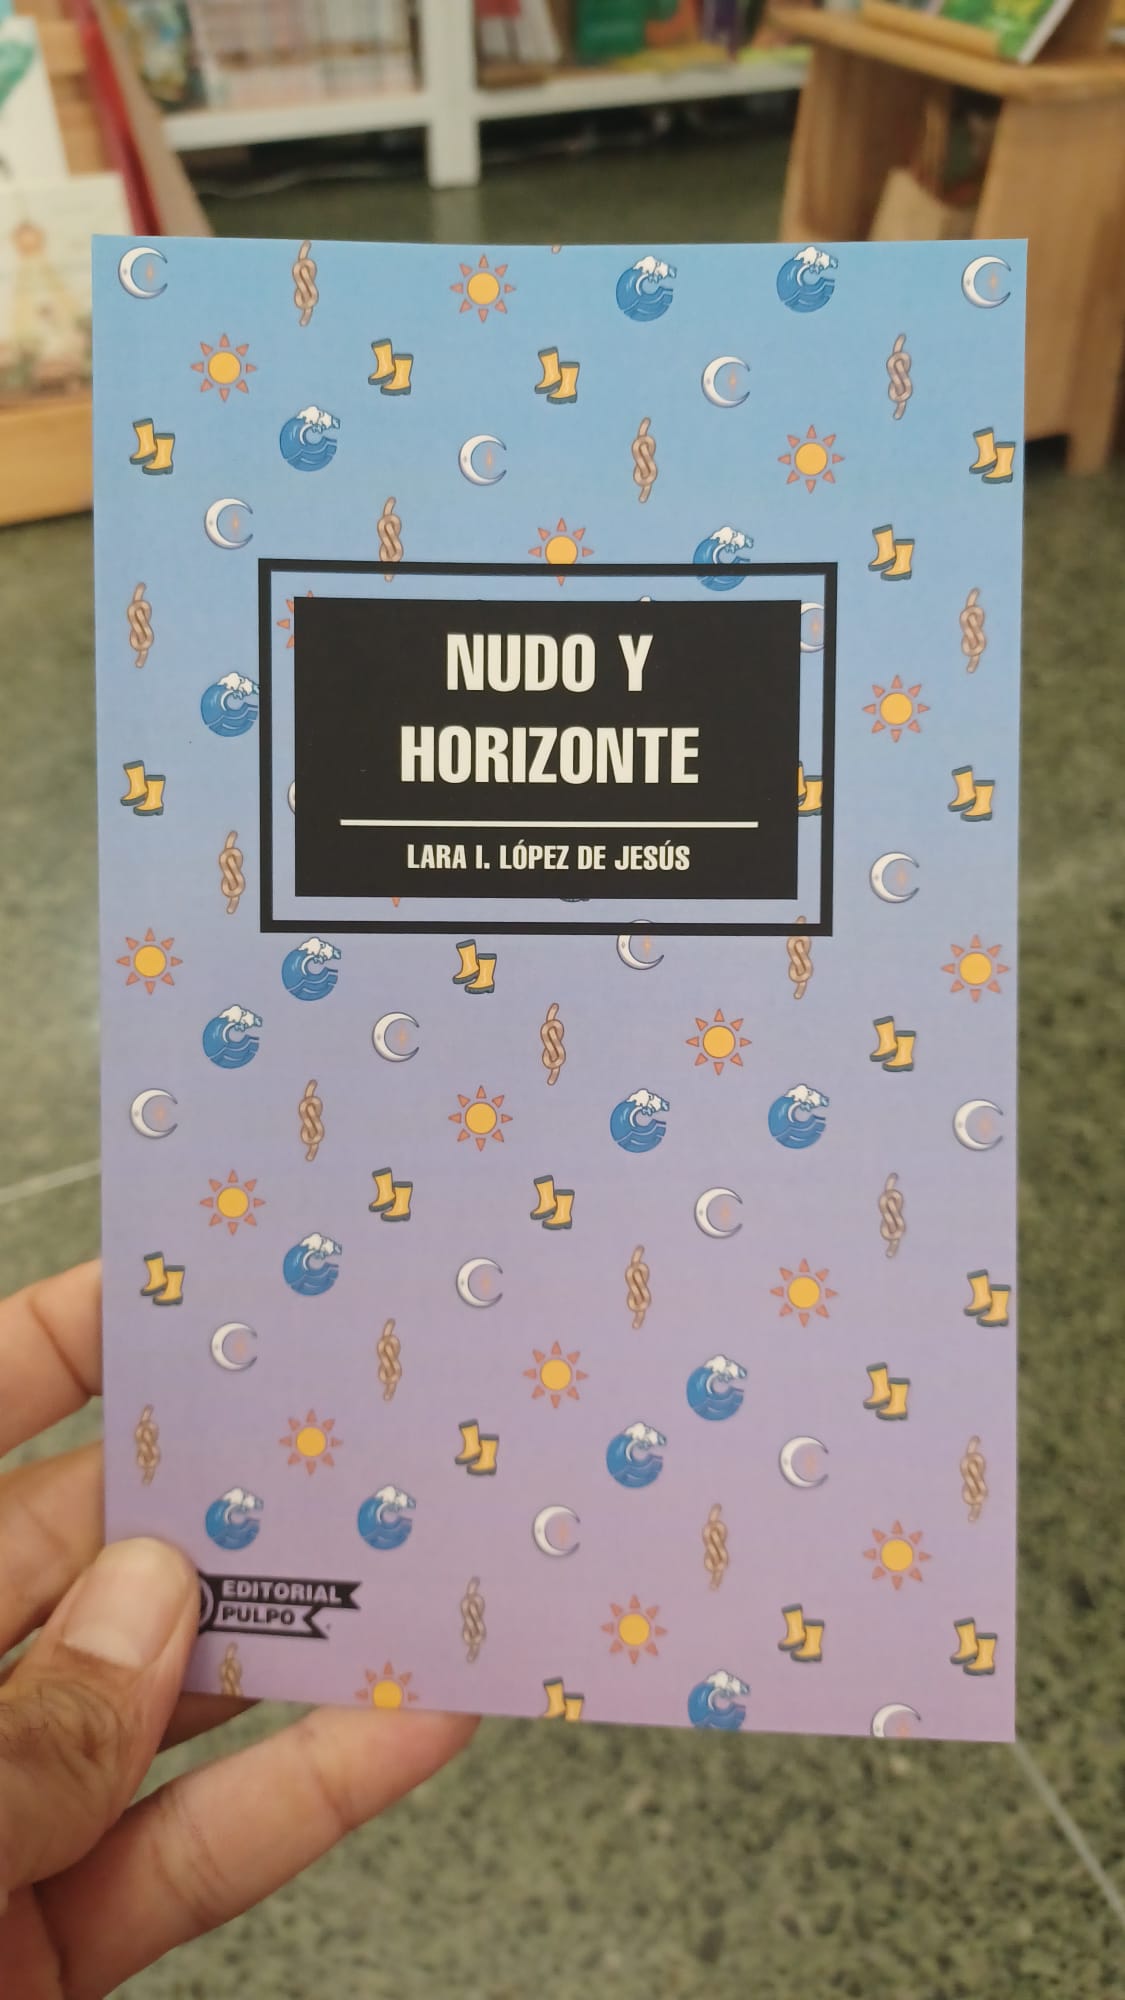 NUDO Y HORIZONTE